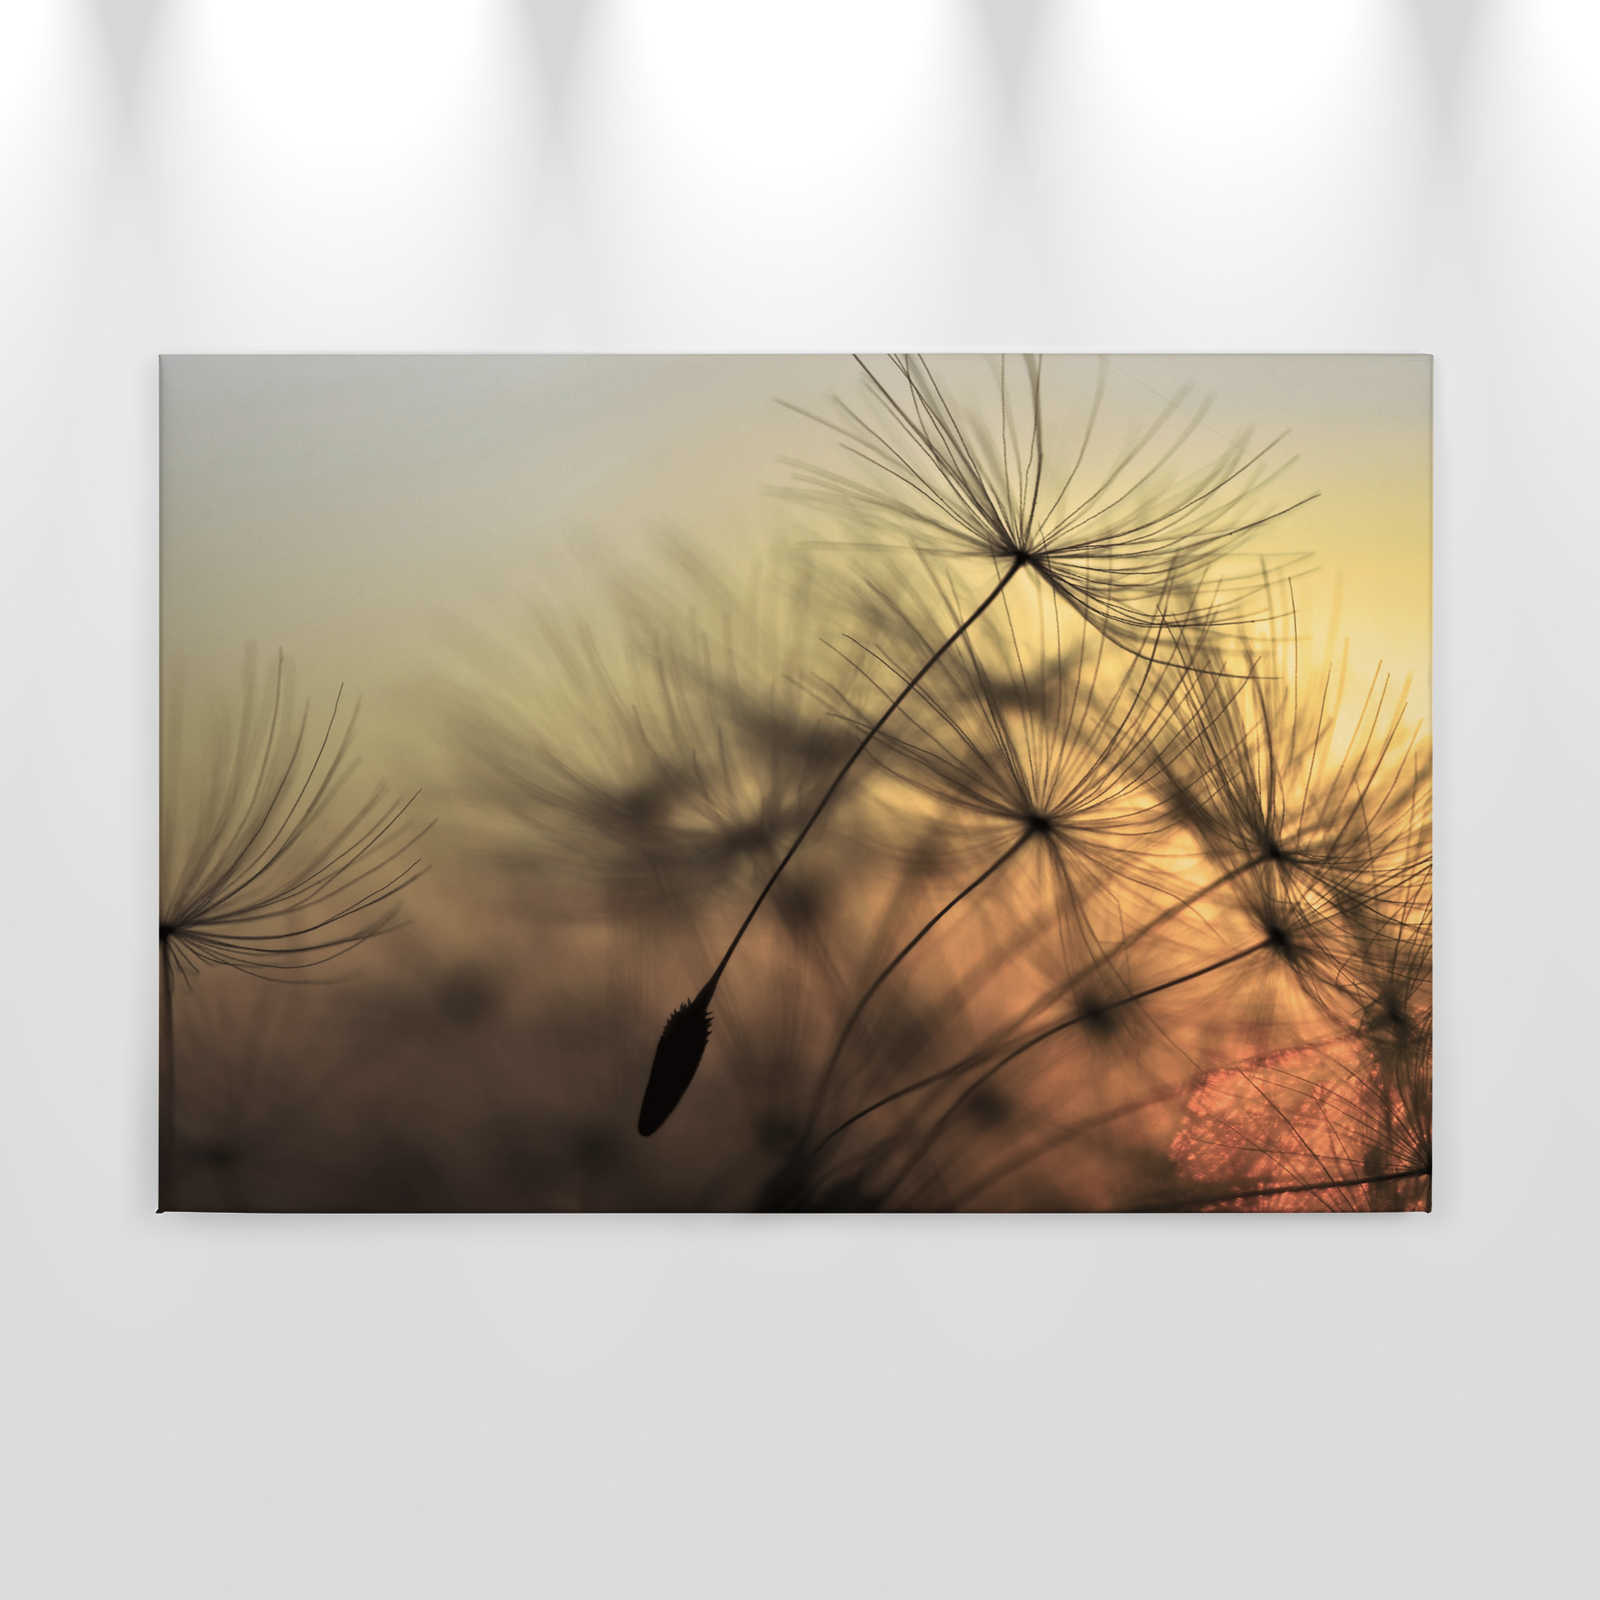             Leinwand mit fliegender Pusteblume im Sonnenuntergang – 0,90 m x 0,60 m
        